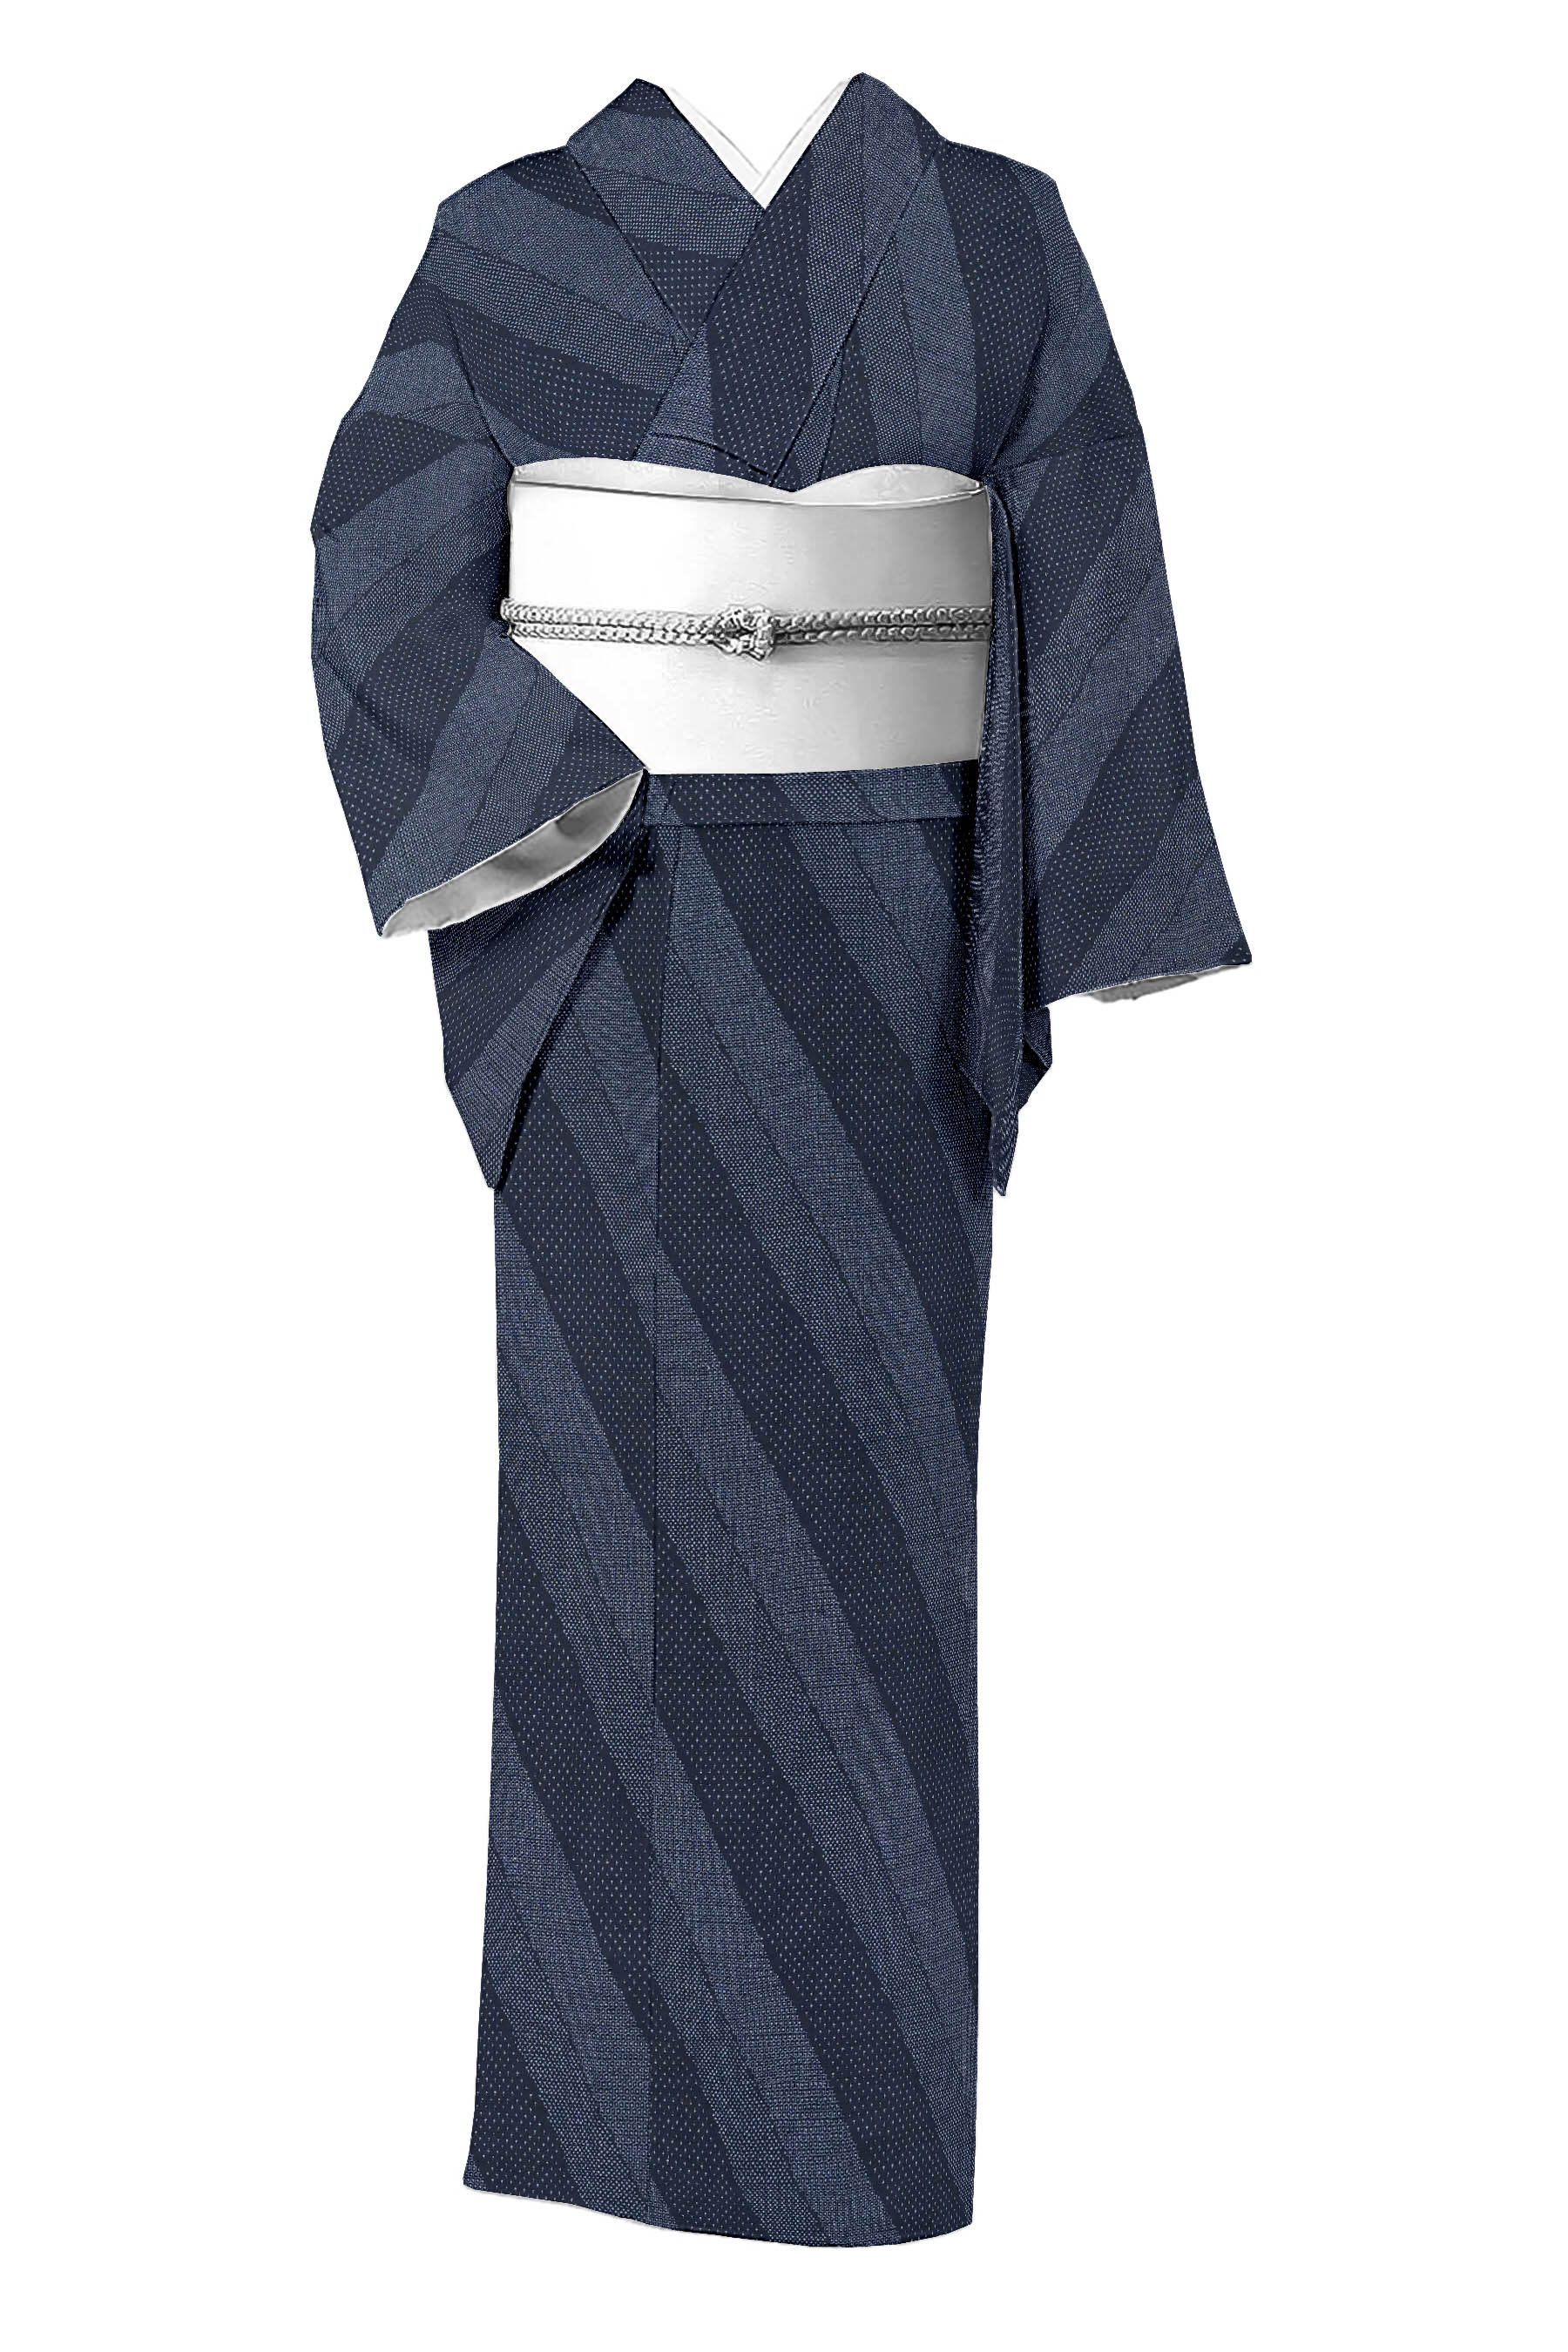 レトロモダンさらりと纏う 本塩沢紬のお着物 - 着物